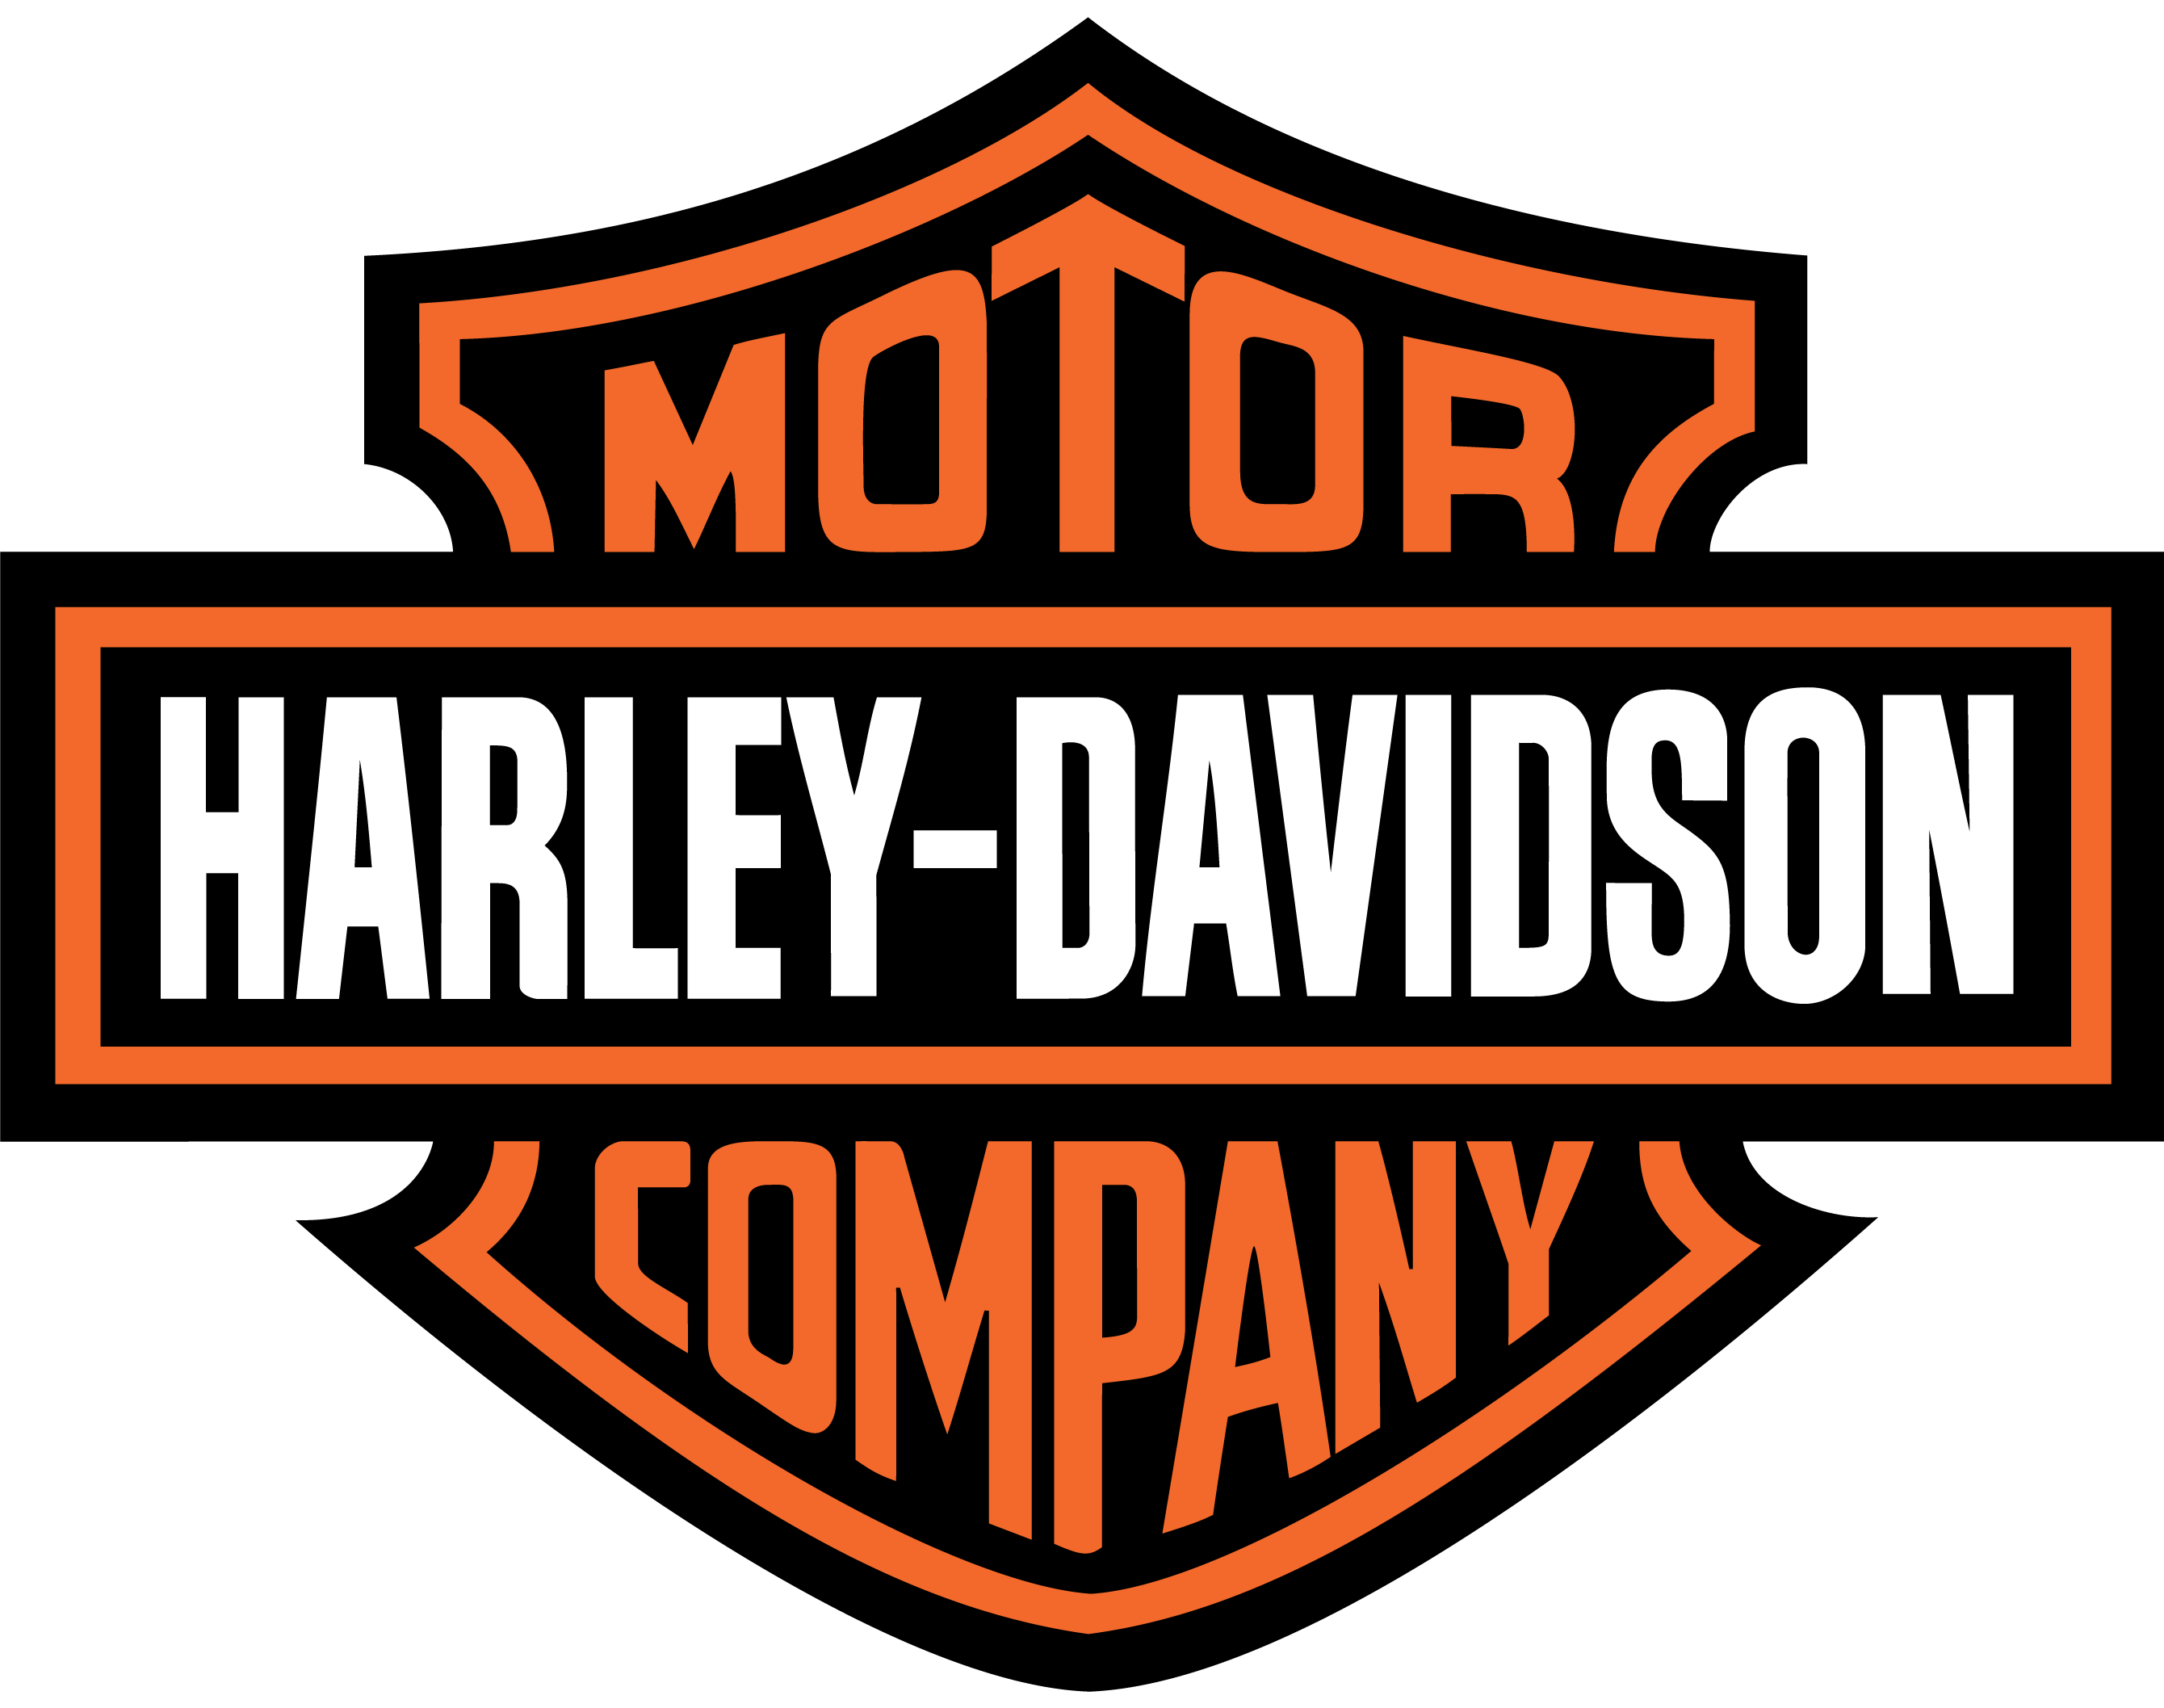 Harley-Davidson Certified Website Provider